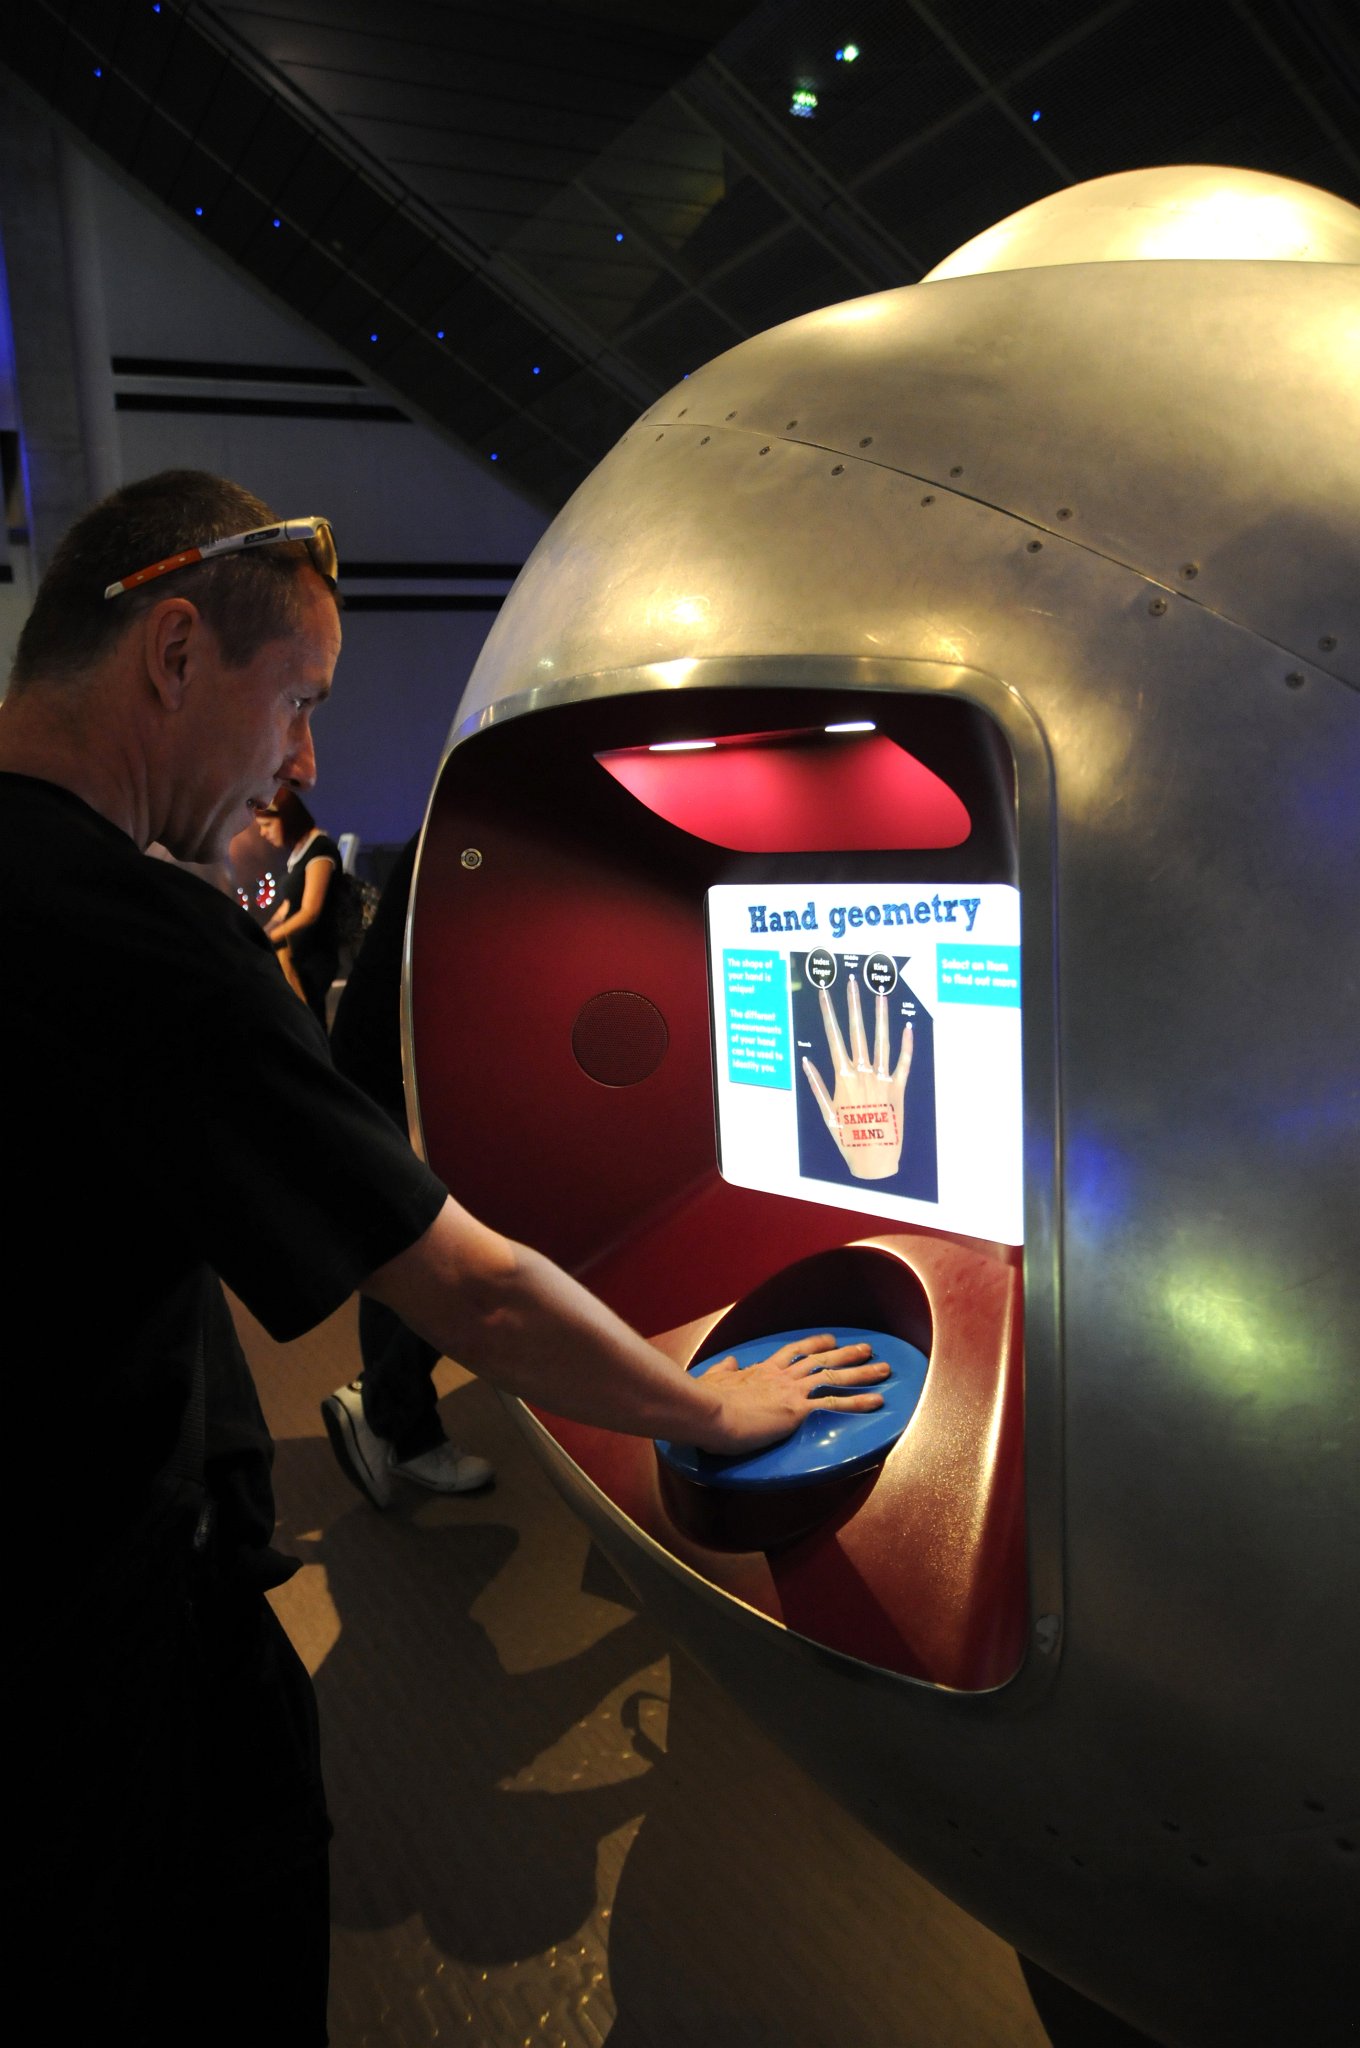 DSC_2910_1.jpg - Fili zkouší interaktivní možnosti v Science Museu v Londýně.